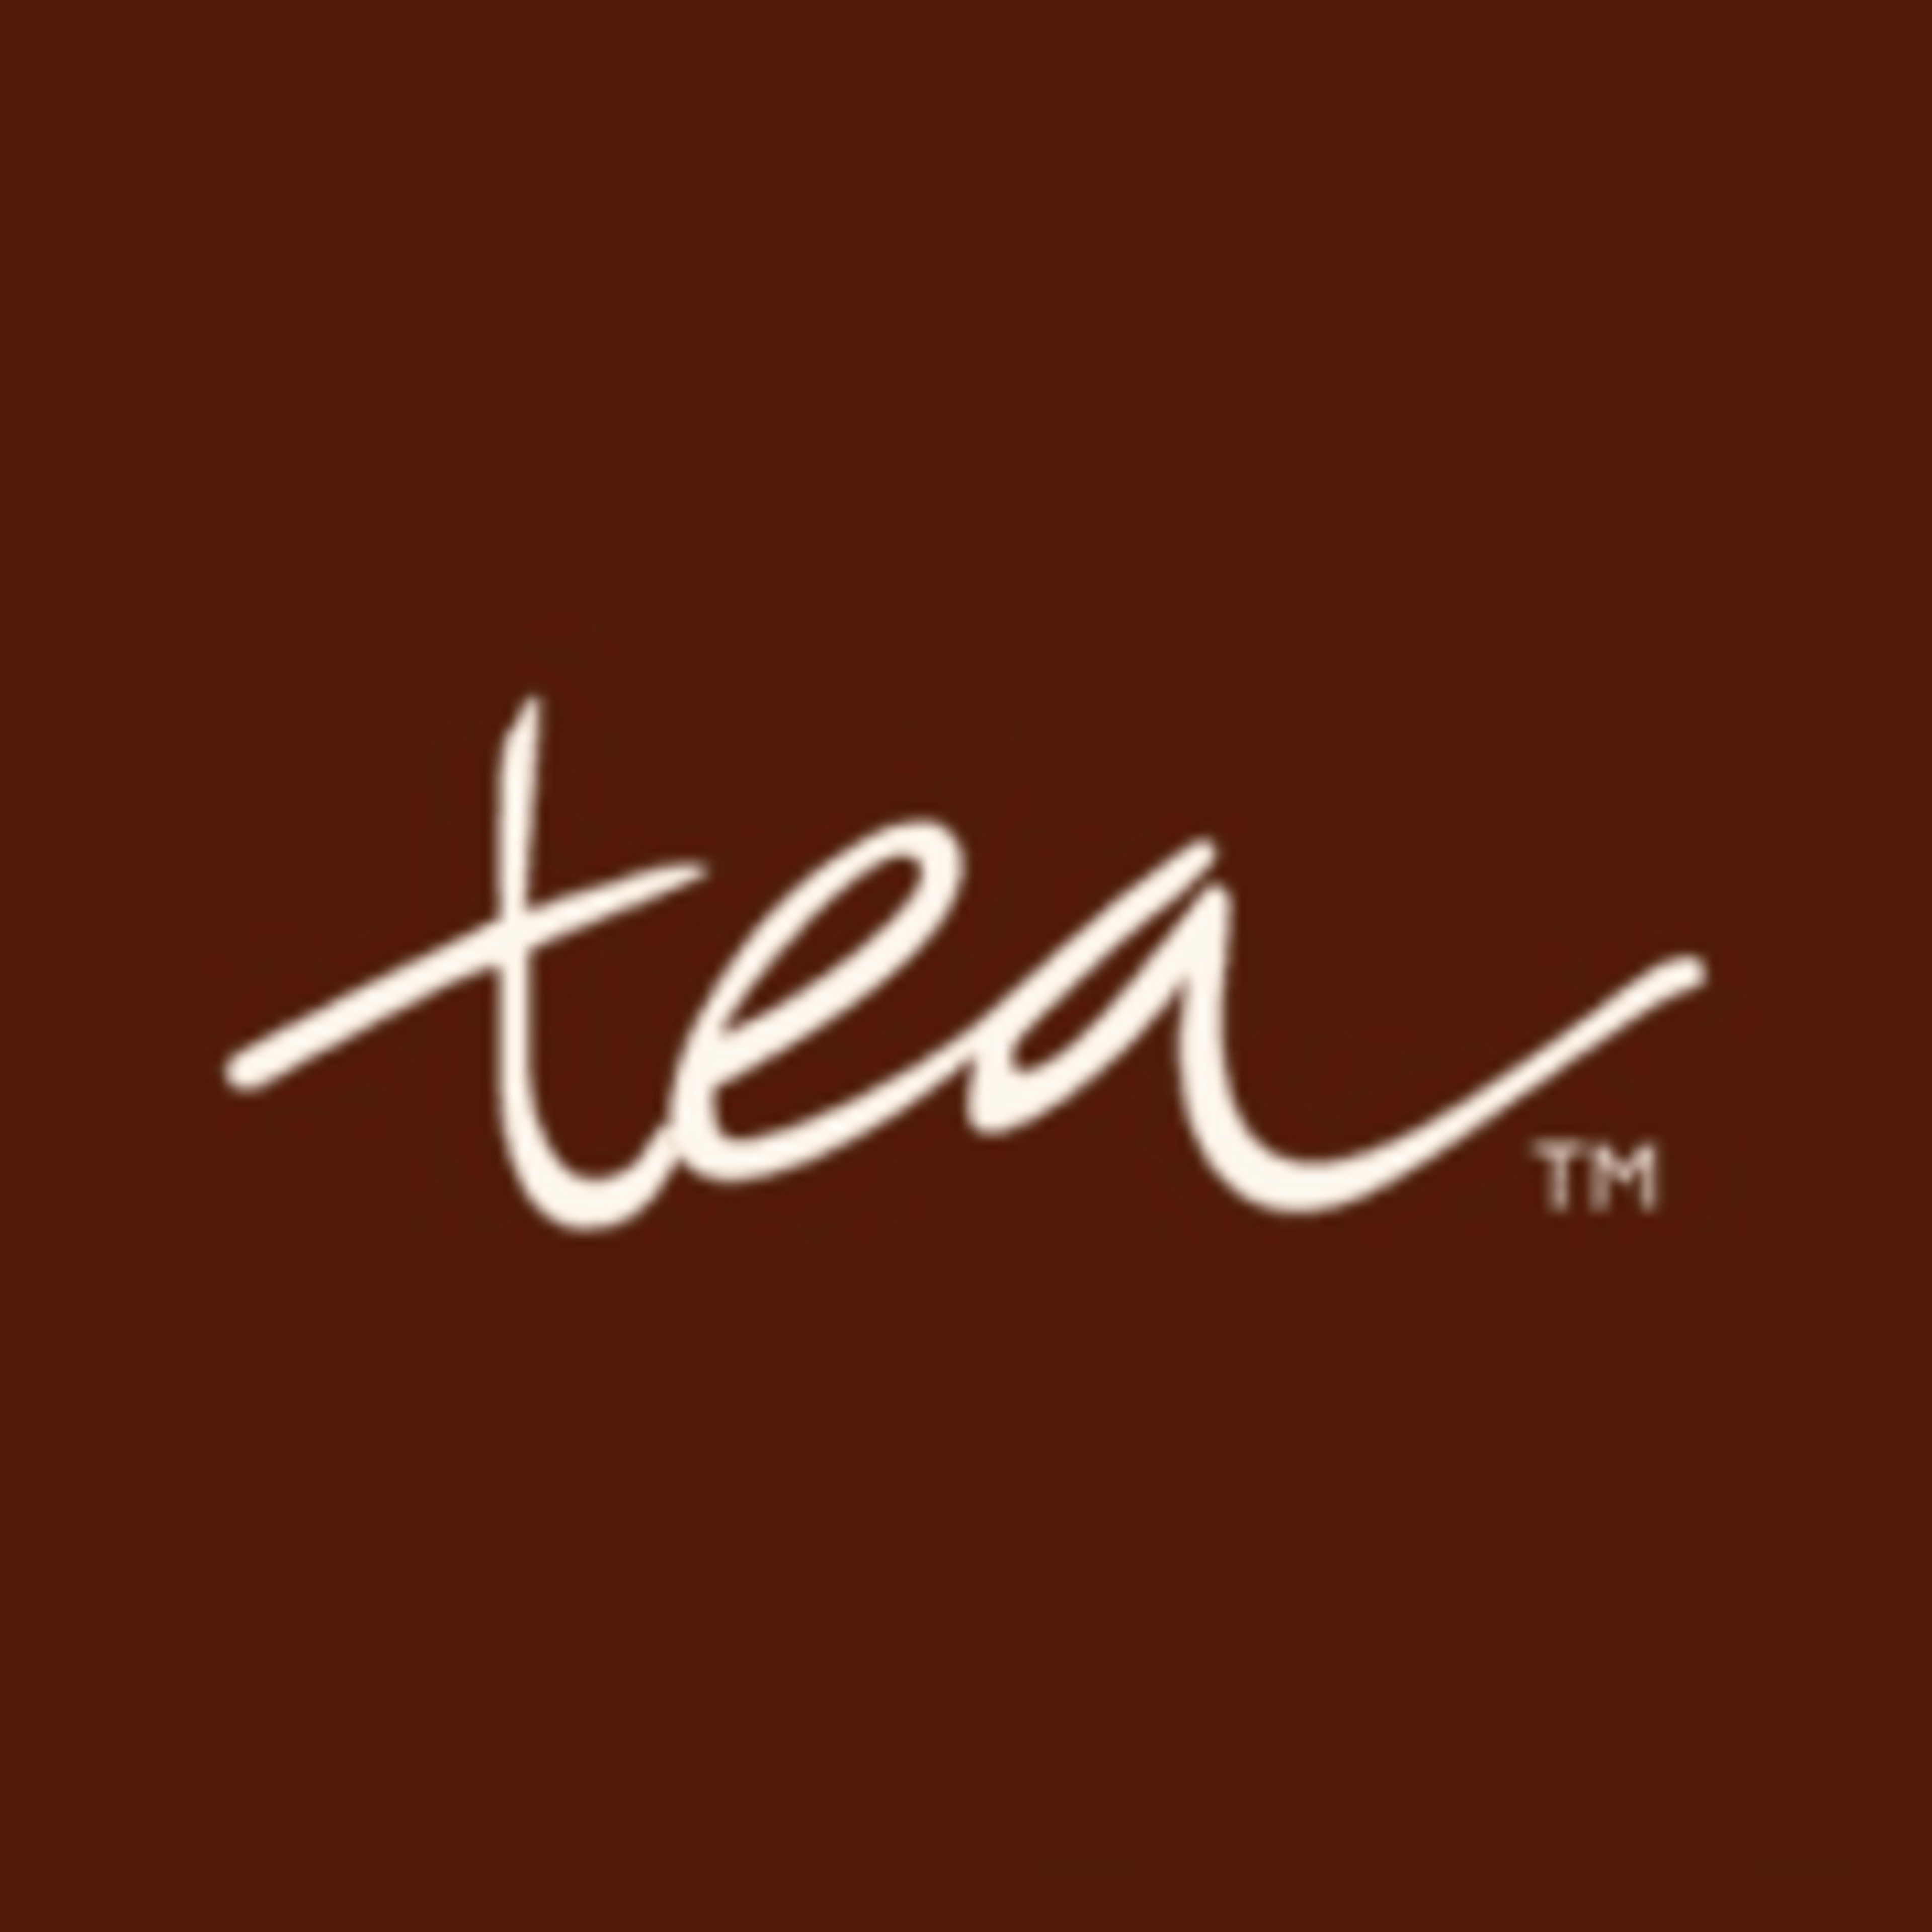 Tea Collection Code